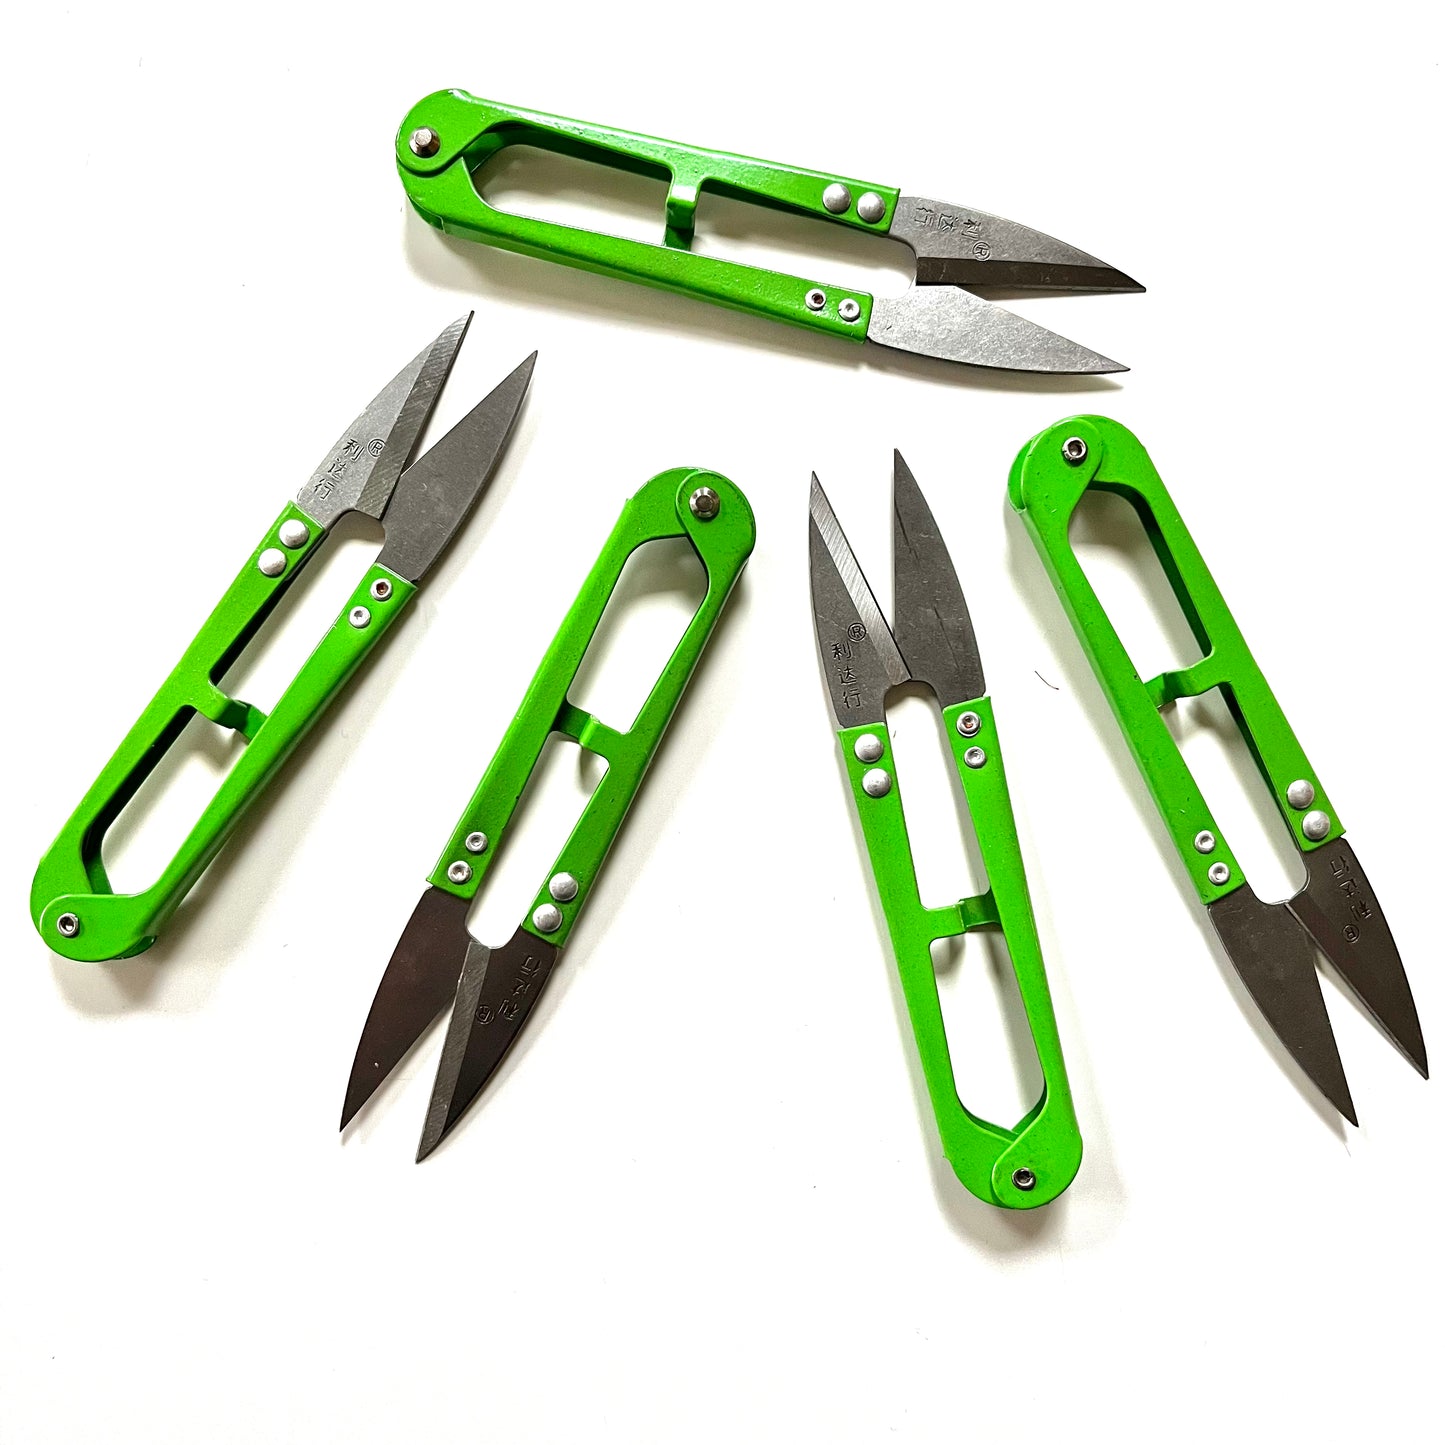 Stanley Minnow™ 5 Kids Scissors, Pointed Tip, Green